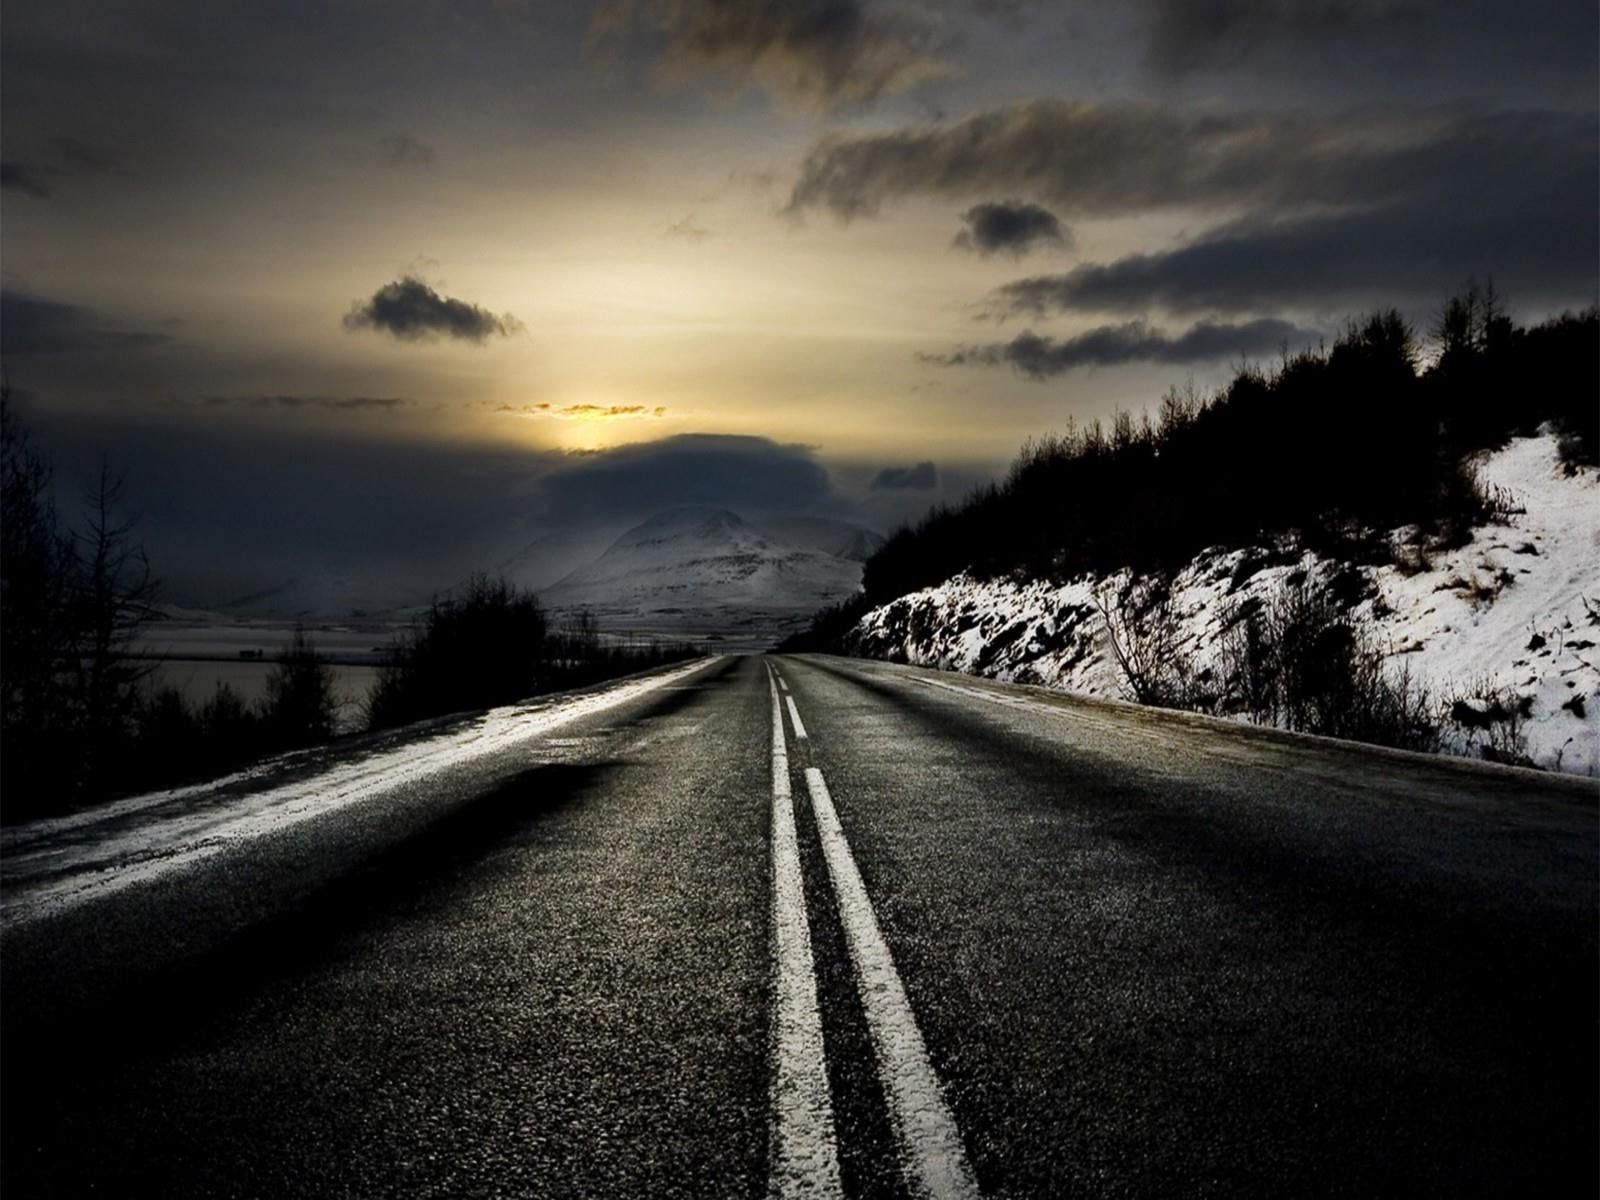 дороги пейзаж монохромный руководство улица небо закат свет снег зима рассвет дерево путешествия природа солнце асфальт шоссе темный перспективы